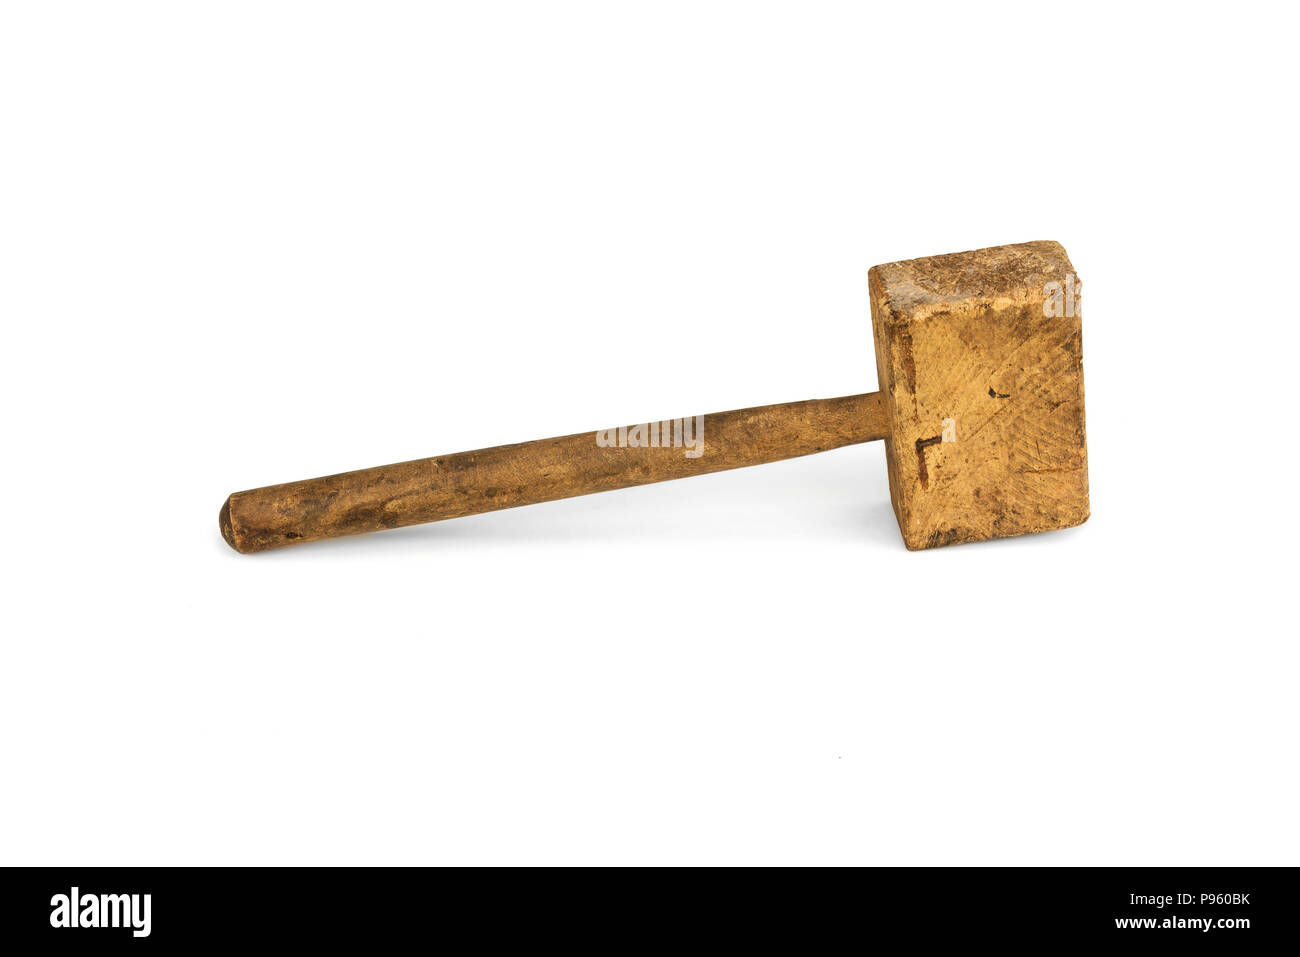 Outil à main. Un maillet en bois est une menuiserie marteau. L'habitude de travailler avec des burins et ciseaux Banque D'Images